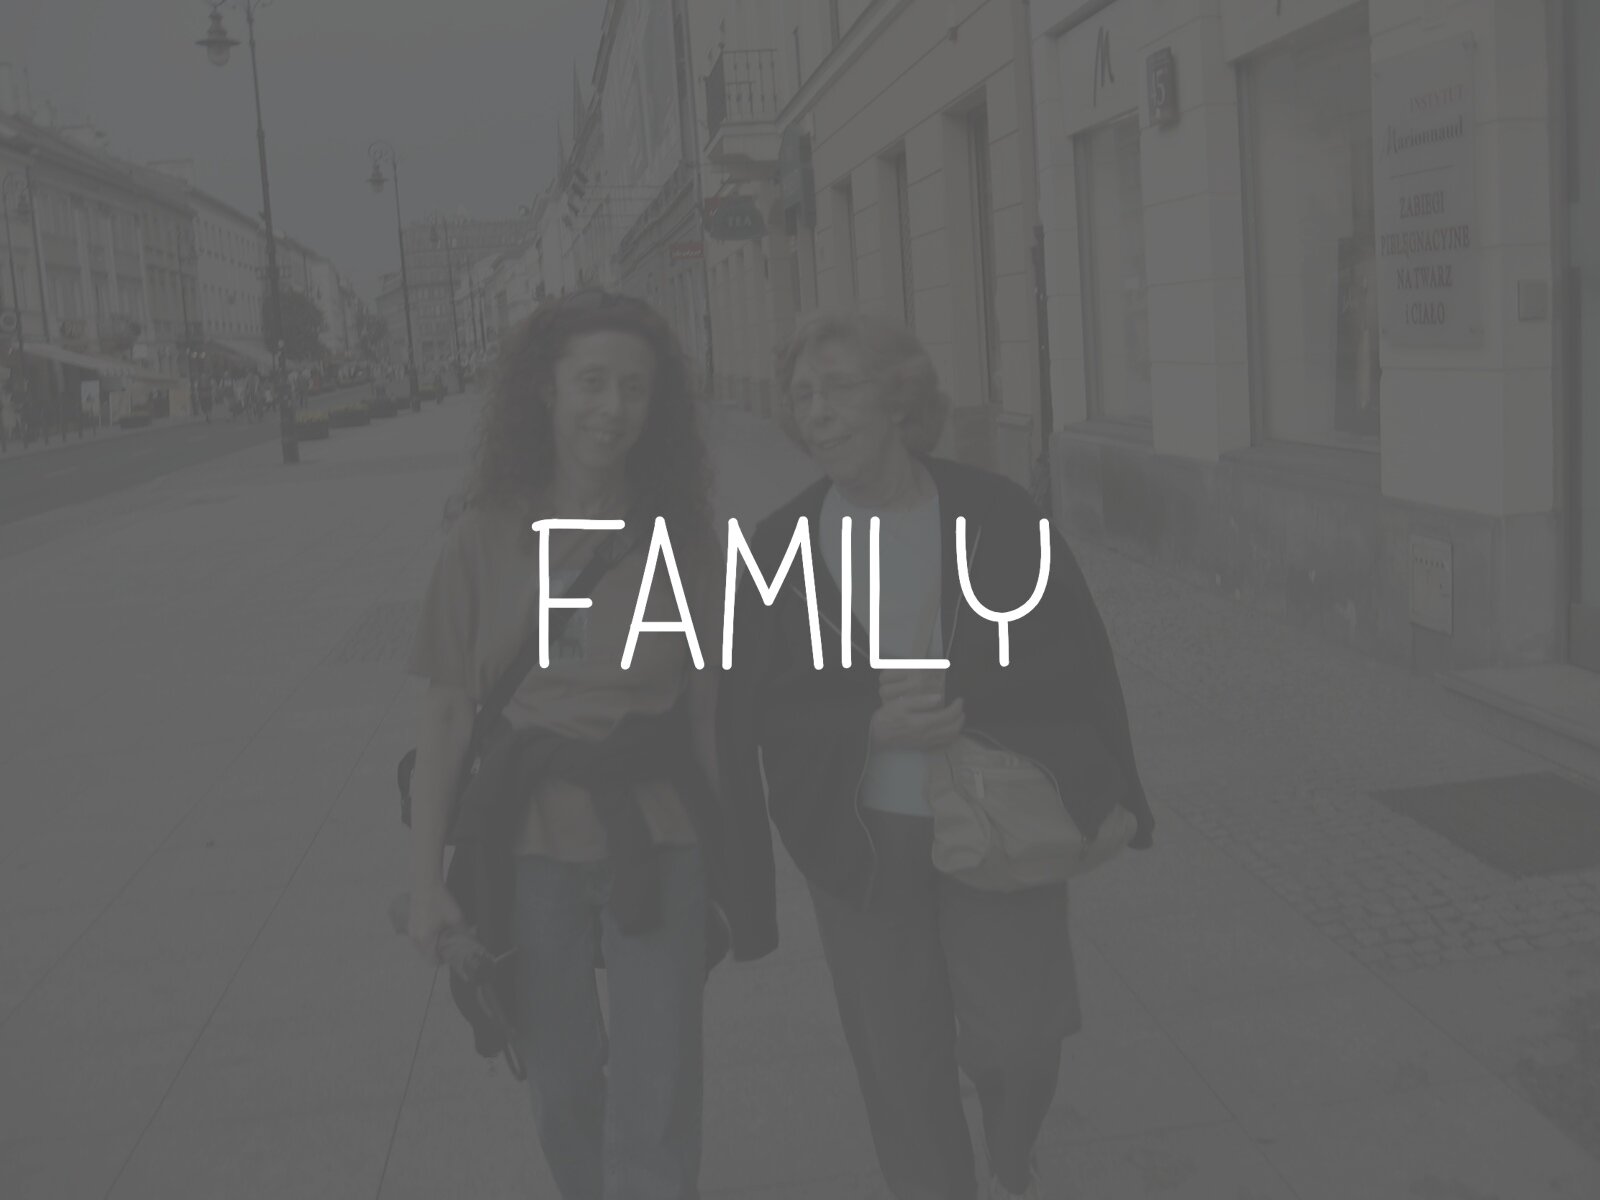 Caption-Family.jpg